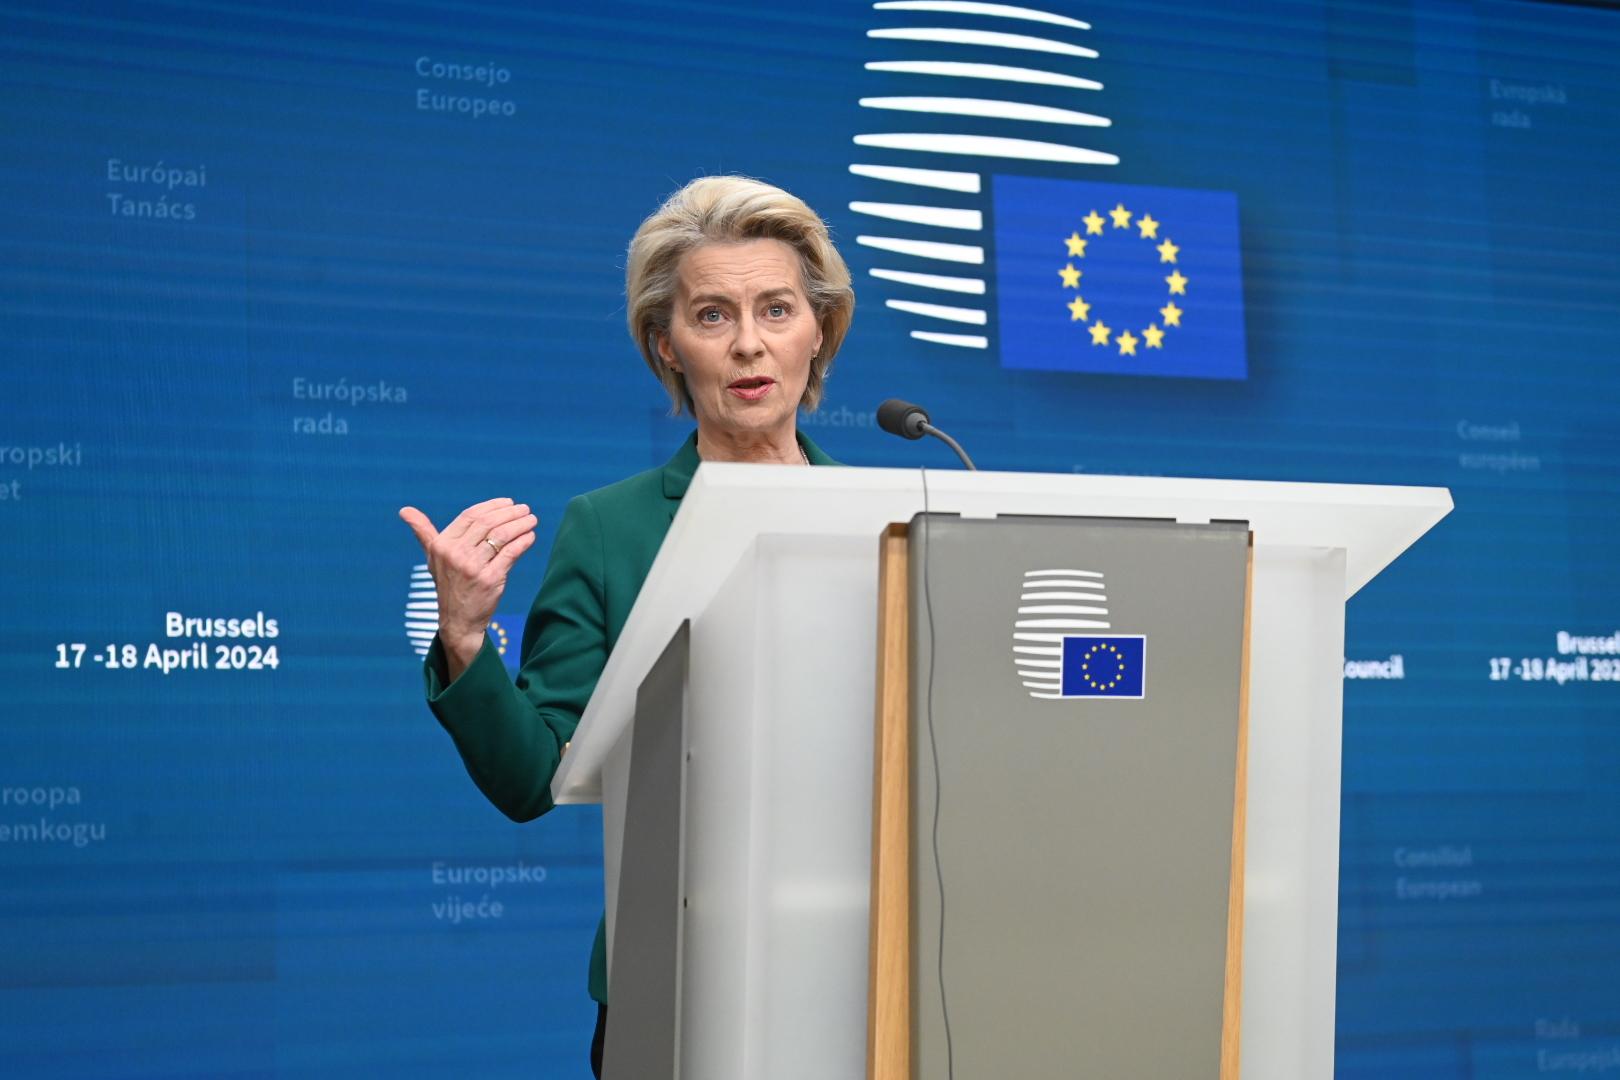 Élections Européennes 2024 à Strasbourg : stratégies et alliances politiques en question